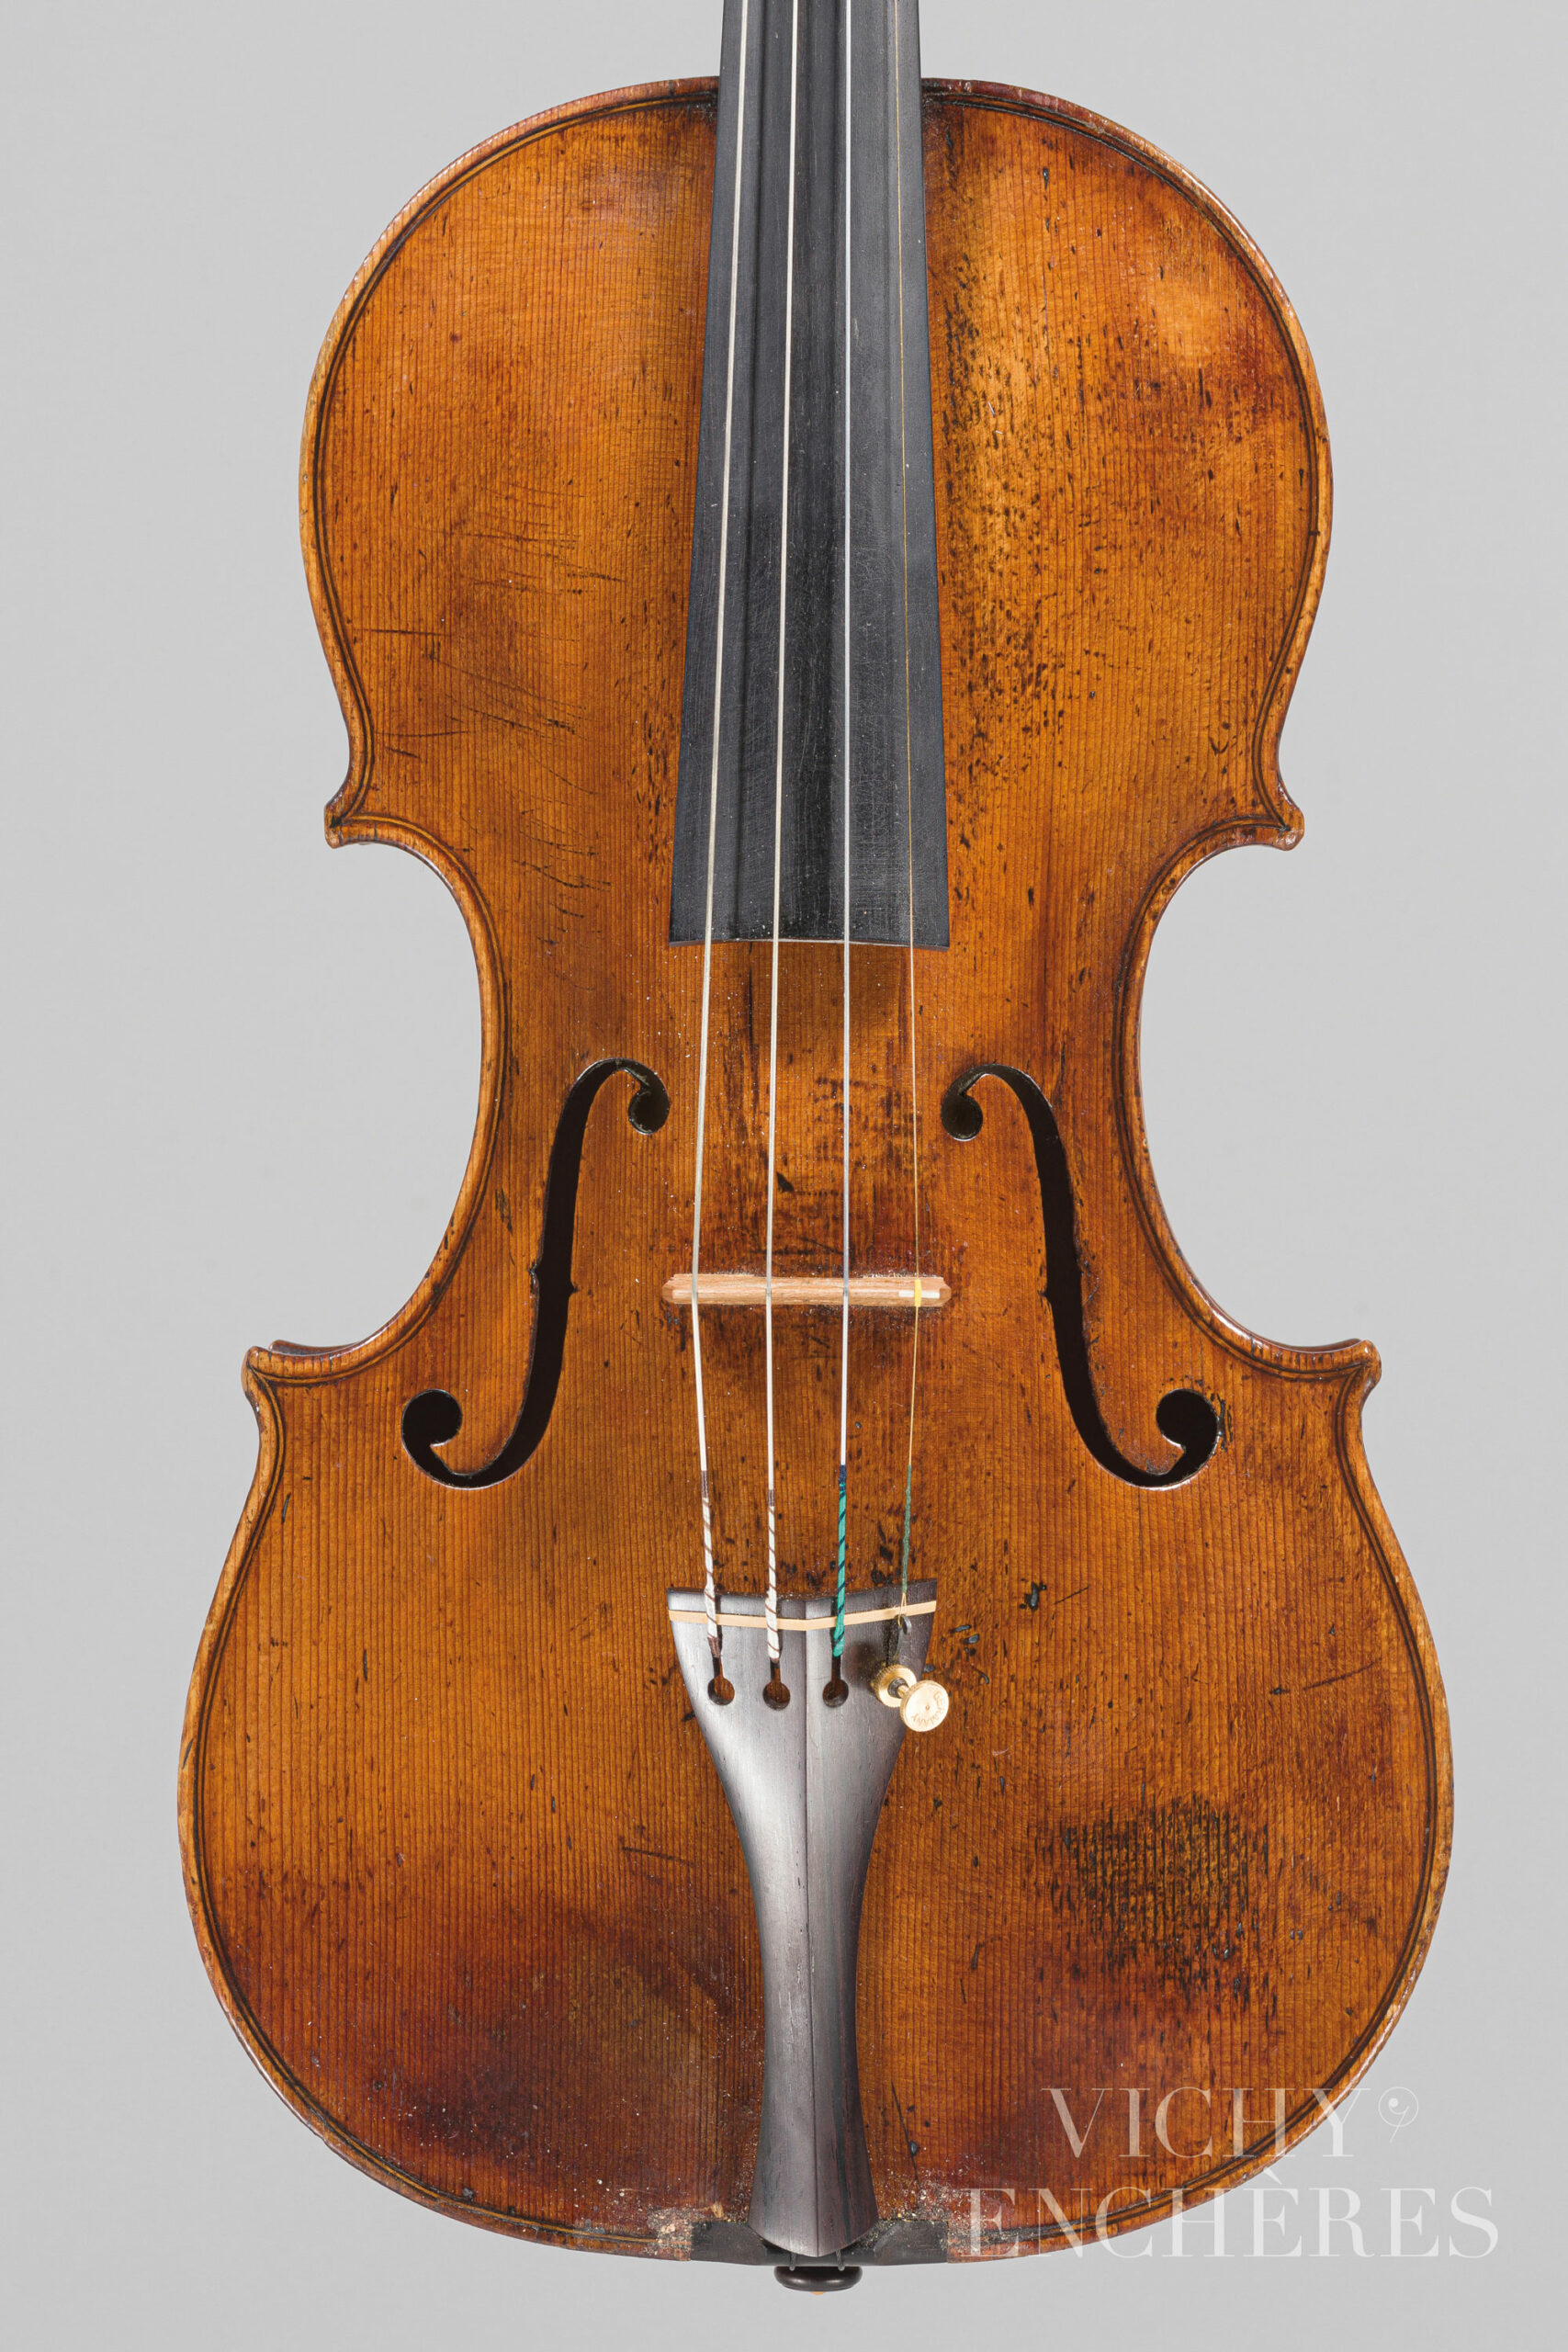 Violon de Lorenzo CARCASSI Instrument mis en vente par Vichy Enchères le 1er décembre 2022 © Christophe Darbelet